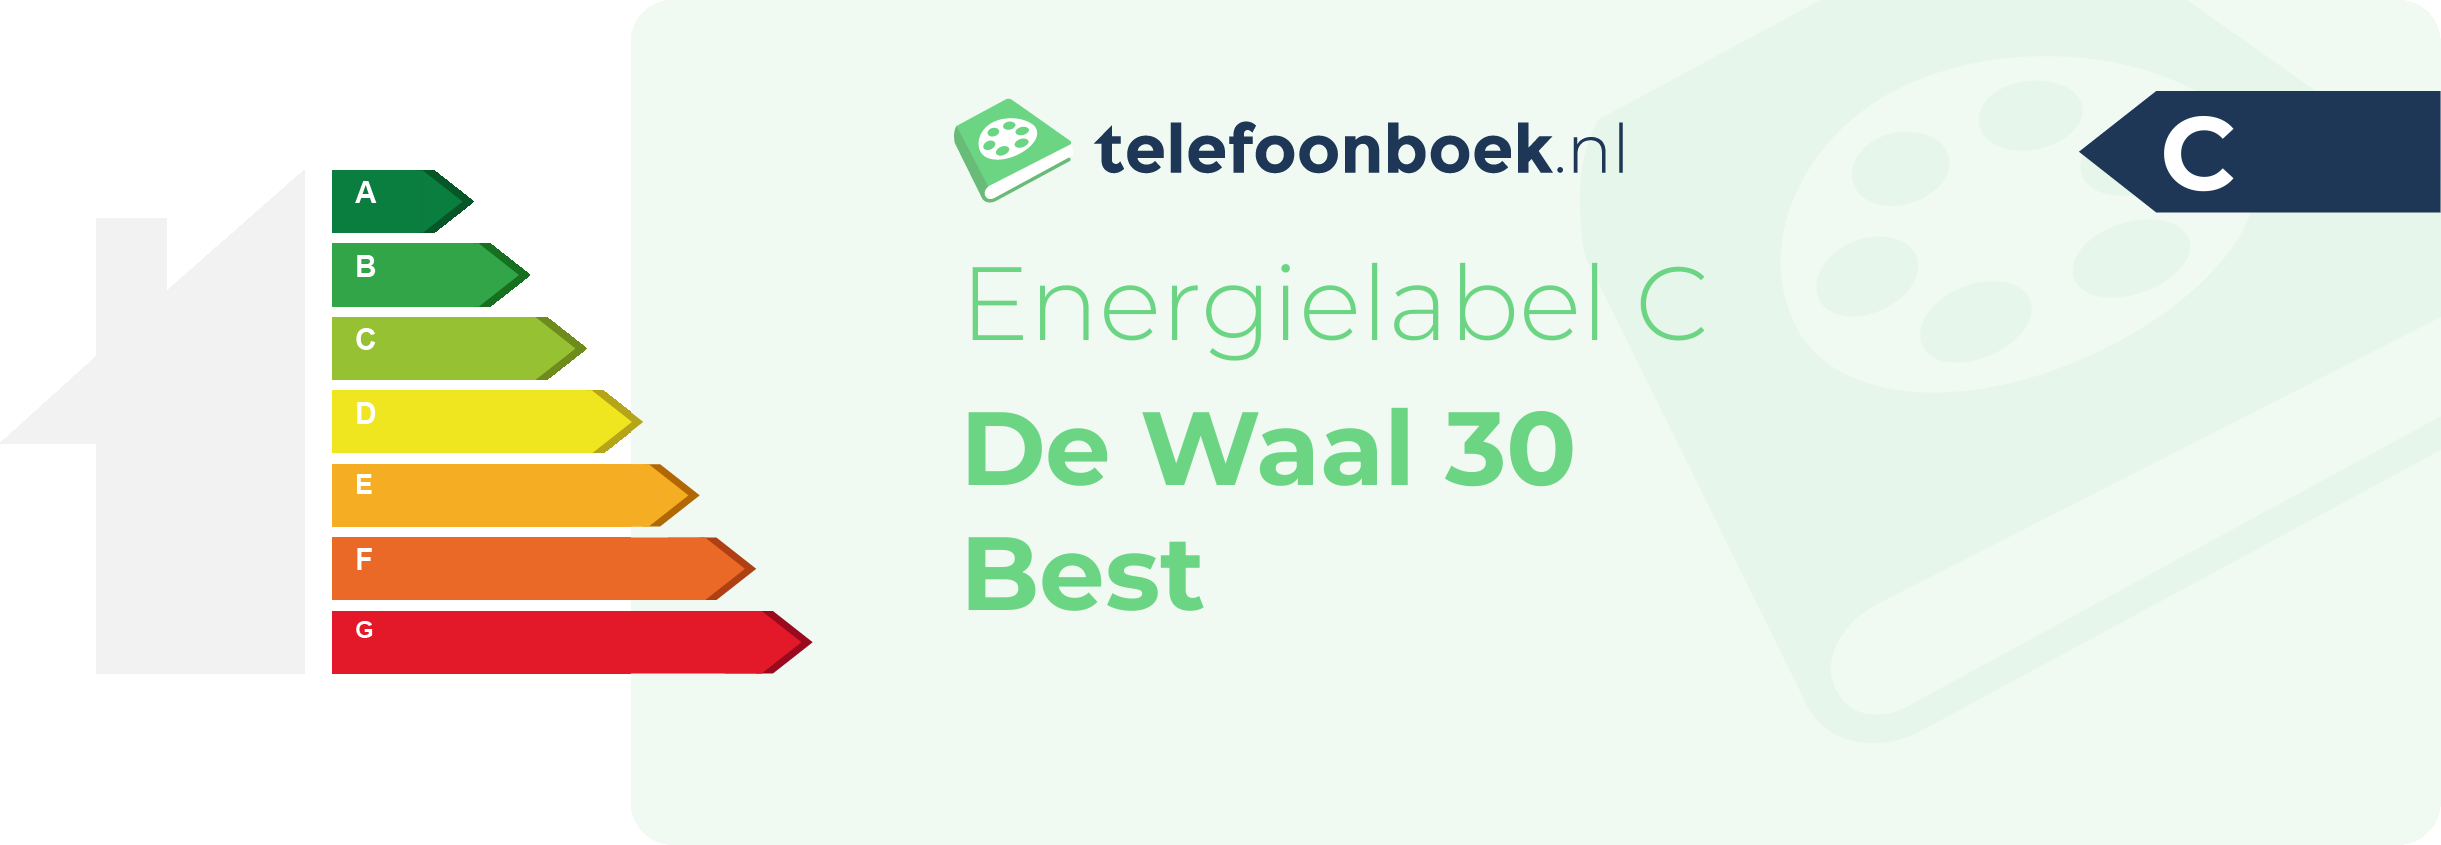 Energielabel De Waal 30 Best